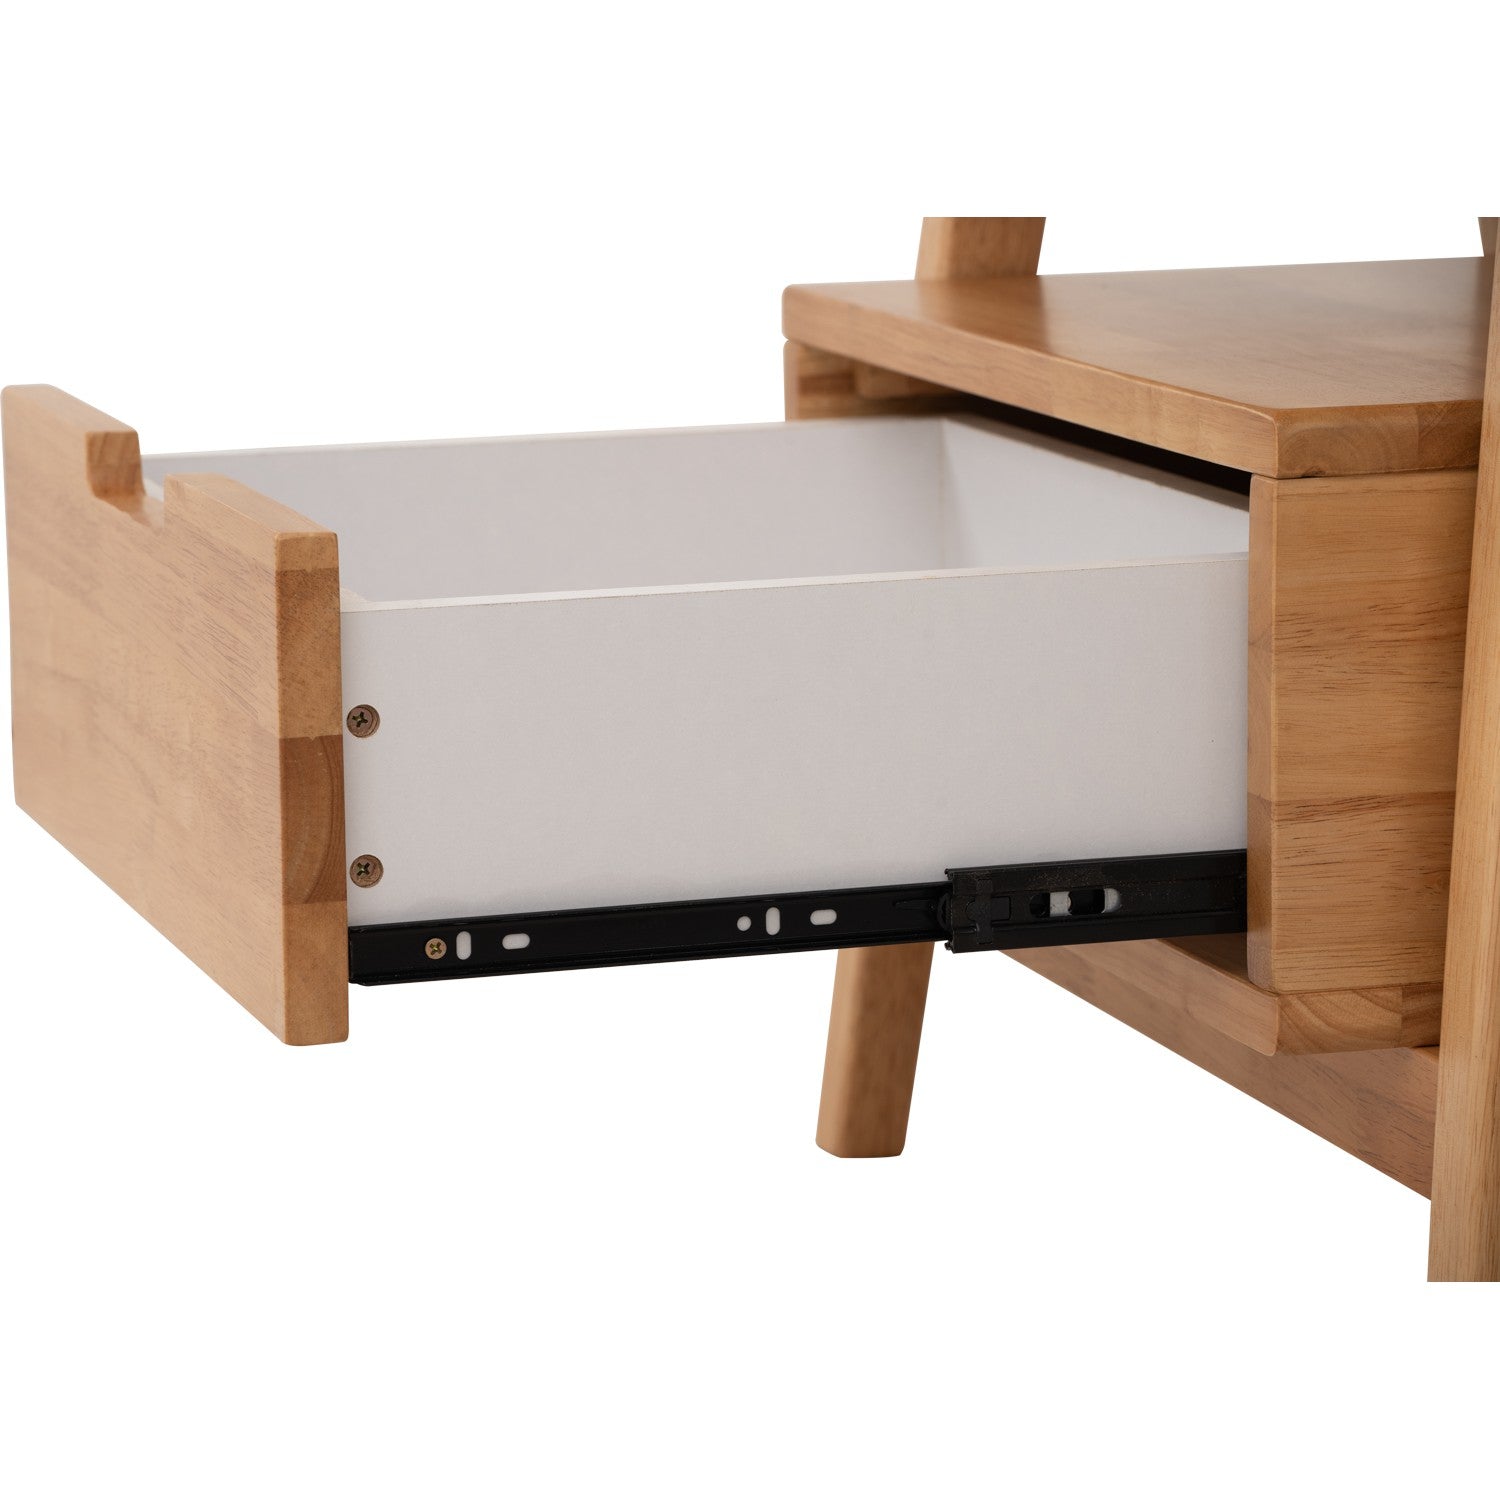 馬來西亞原裝進口實木傢俬 - NZ系列 - KEVA床頭櫃